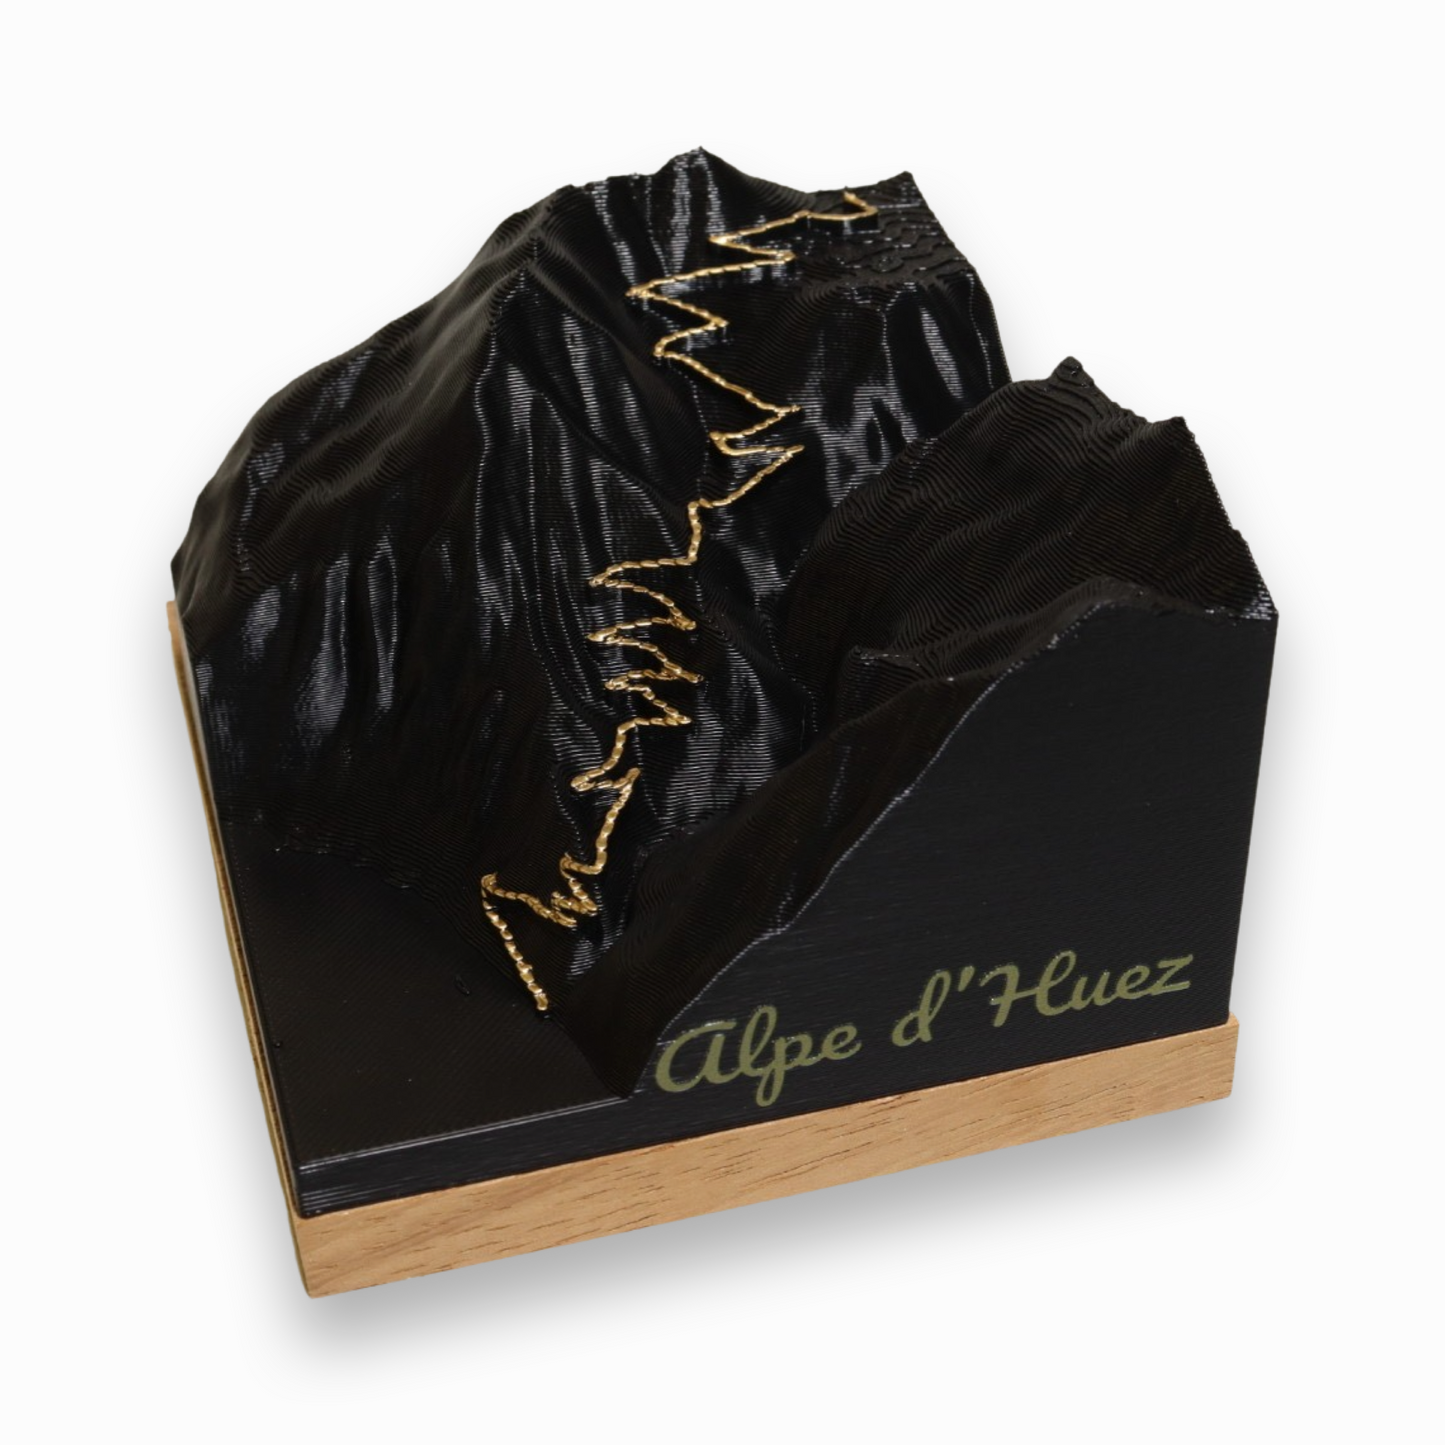 Alpe d'Huez, gifts for cyclists, cycling souvenirs, Alpe d'Huez souvenirs